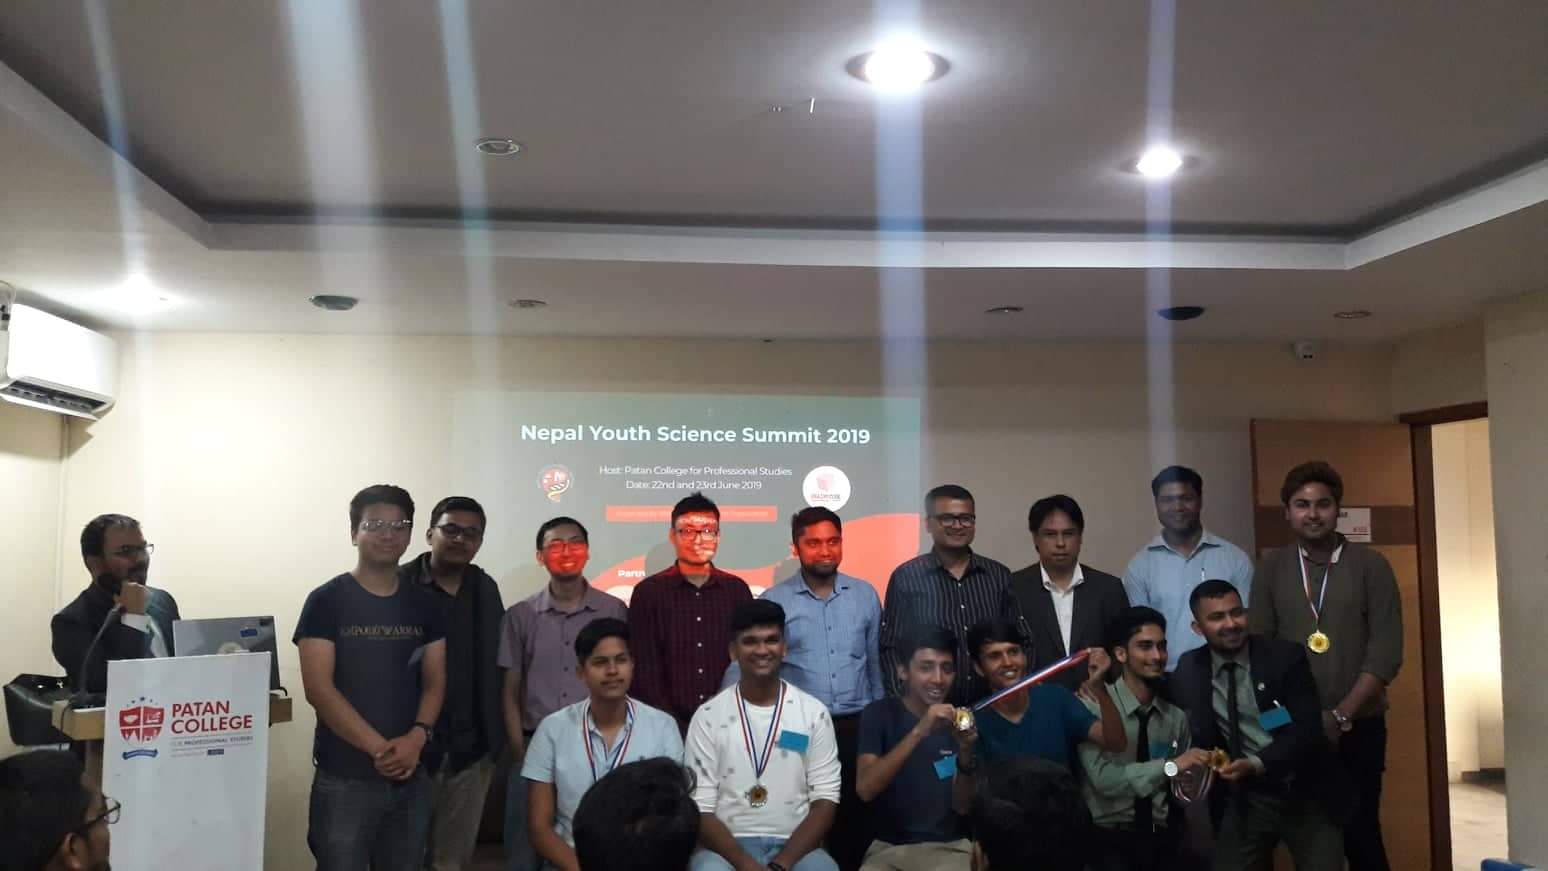 तेस्रो ‘नेपाल युवा वैज्ञानिक शिखर सम्मेलन’ काठमाडौँमा सम्पन्न